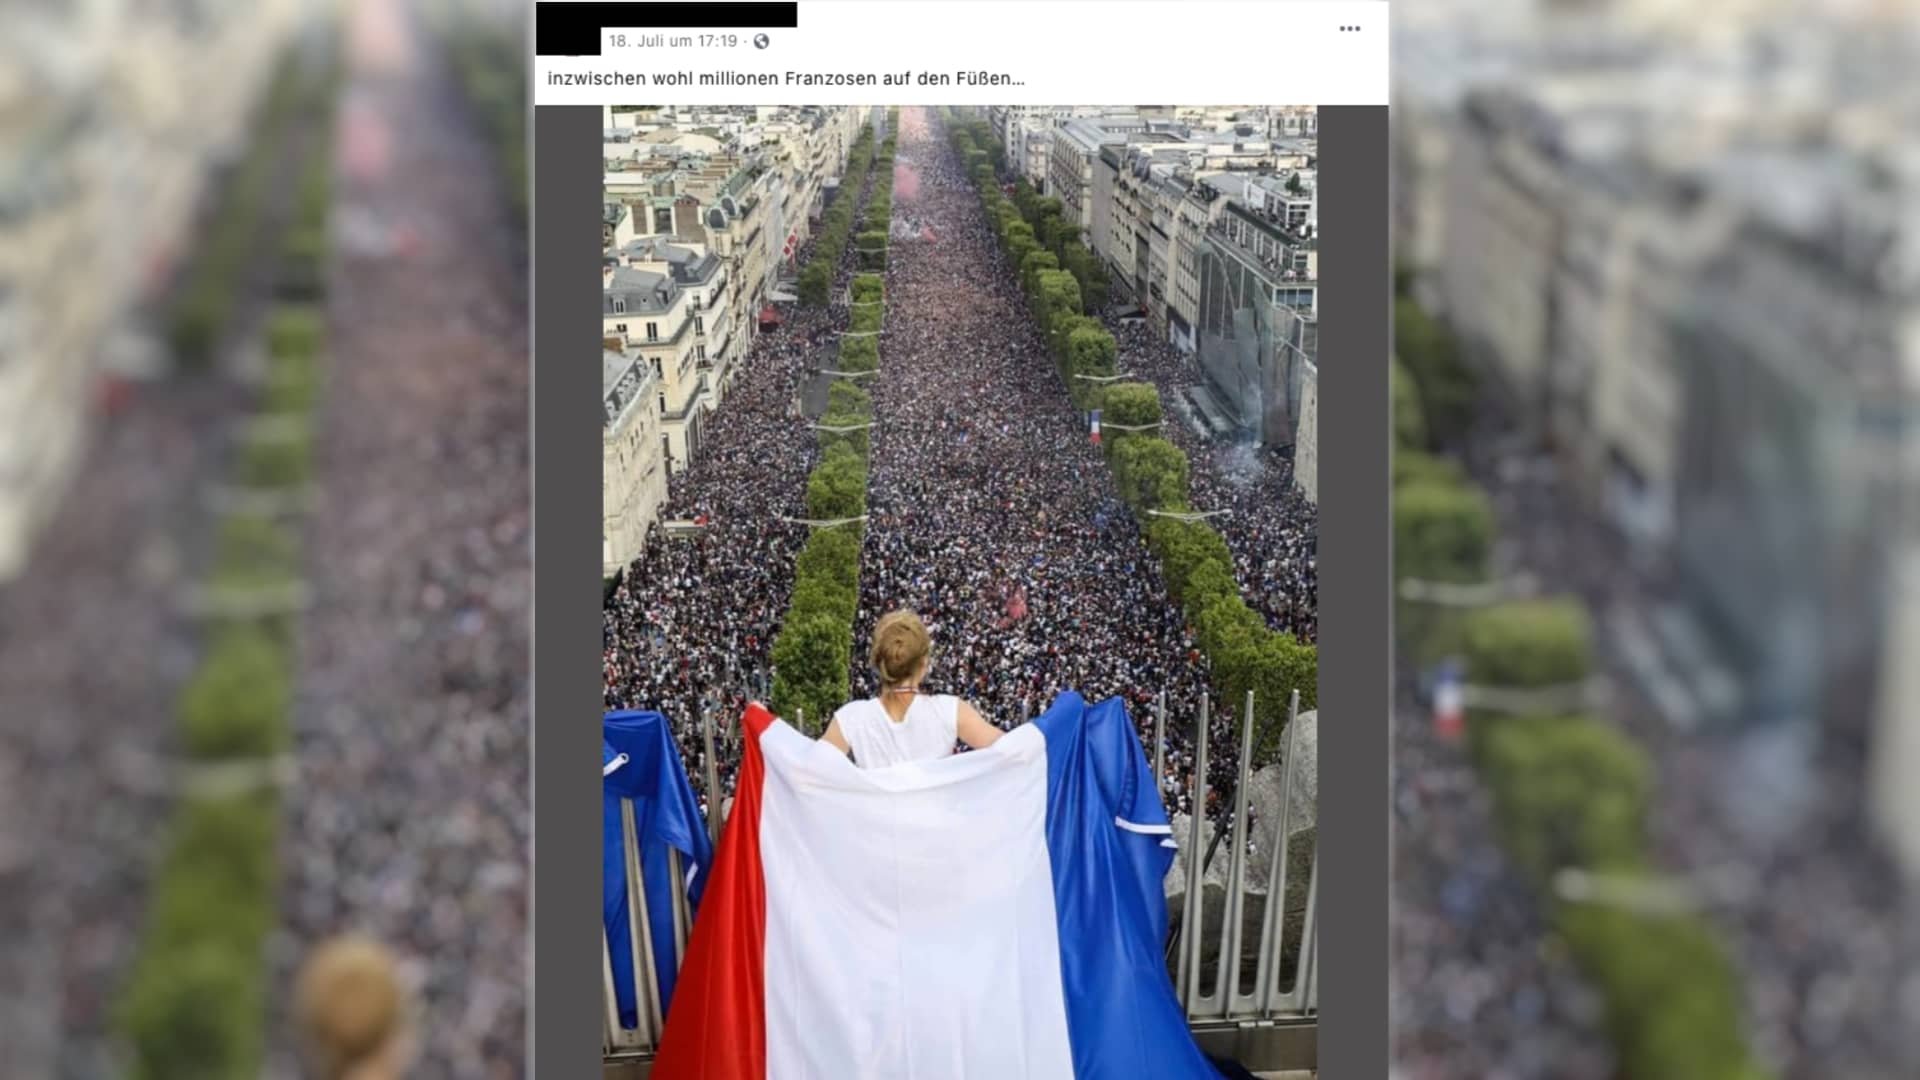 feiernde Fans in Frankreich nach dem Fußball-Finale bei der WM 2018